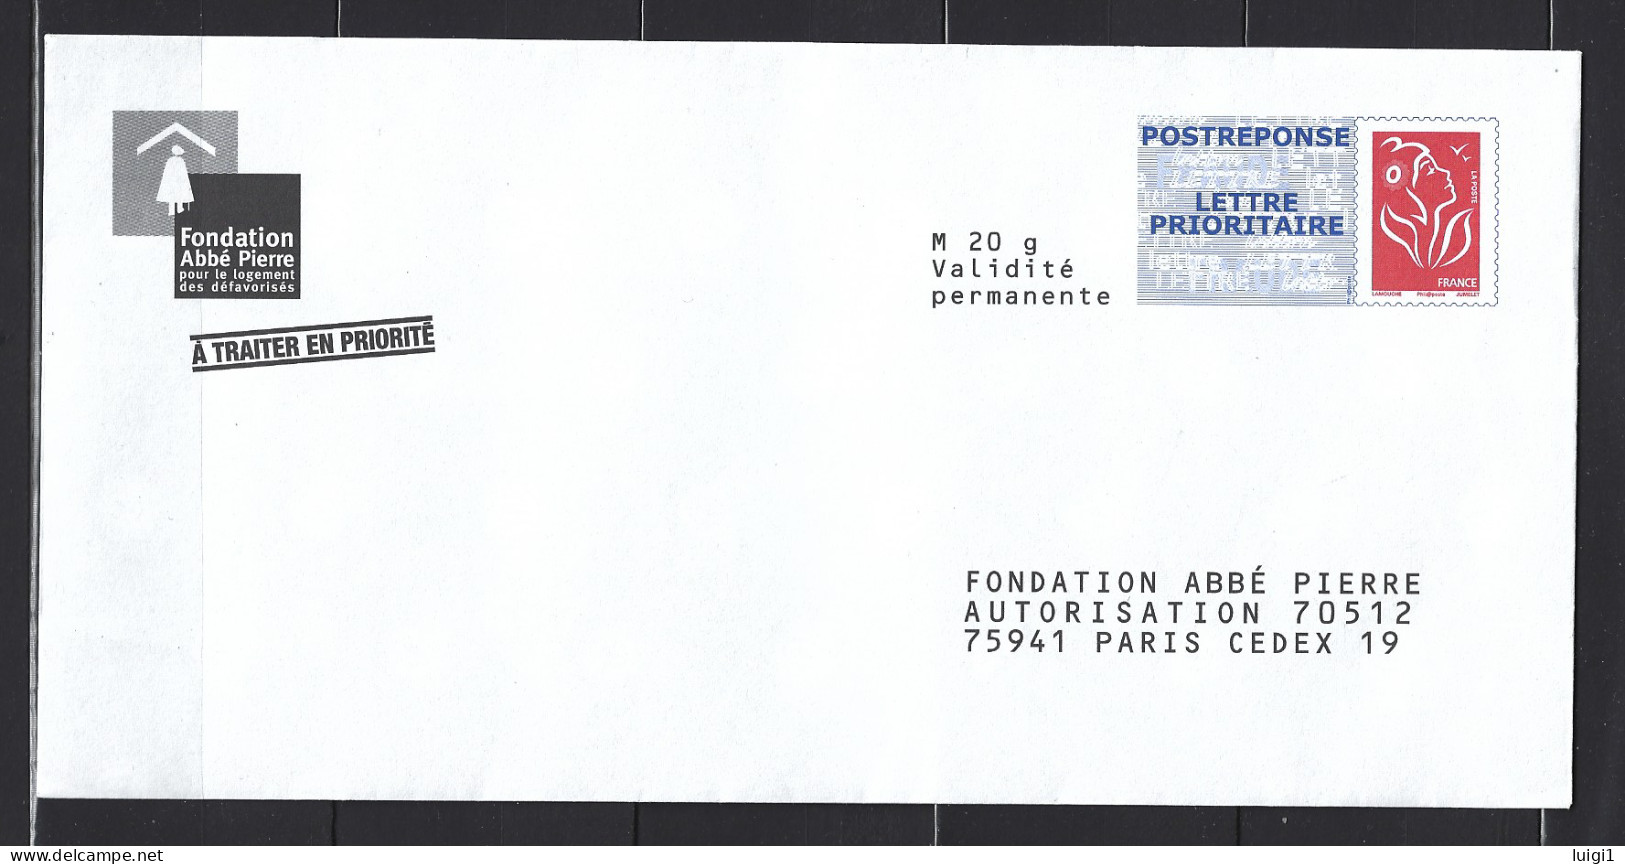 FRANCE 2006 - LAMOUCHE - Enveloppe PAP POSTREPONSE Repiqué (Phil@poste) ." Fondation Abbé Pierre " . Neuf. TB. - PAP: Ristampa/Lamouche